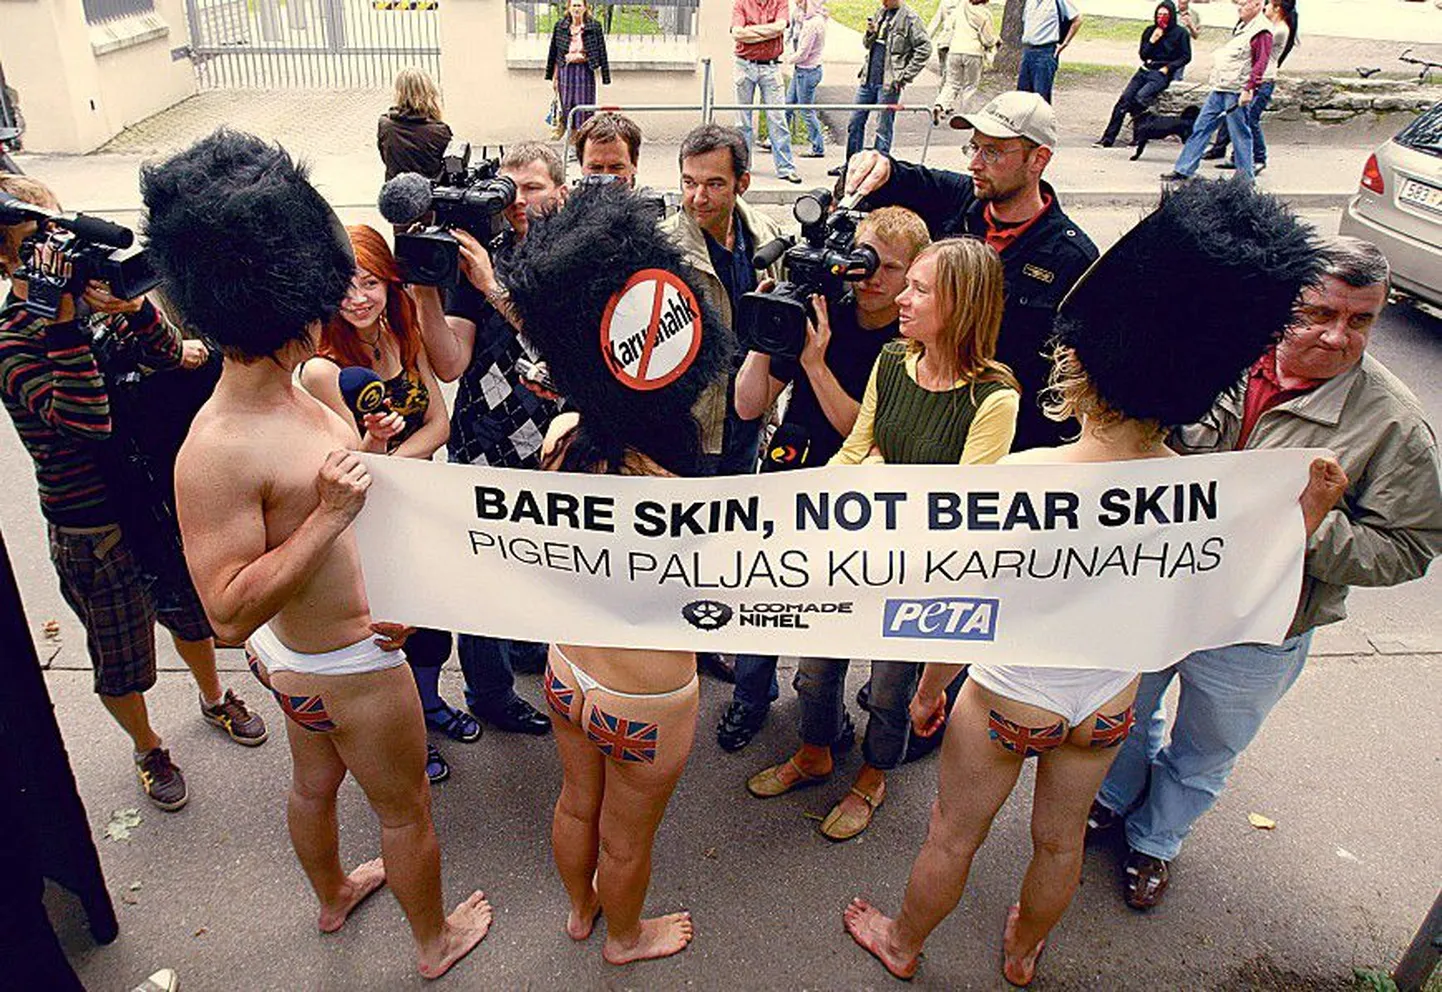 В июне прошлого года защитники животных из Великобритании устроили нудистский пикет перед посольством в Таллинне. На плакате «Лучше ходить голым, чем в медвежьей шкуре» значились логотипы движений PETA («Люди за этическое отношение к животным») и Loomade Nimel.